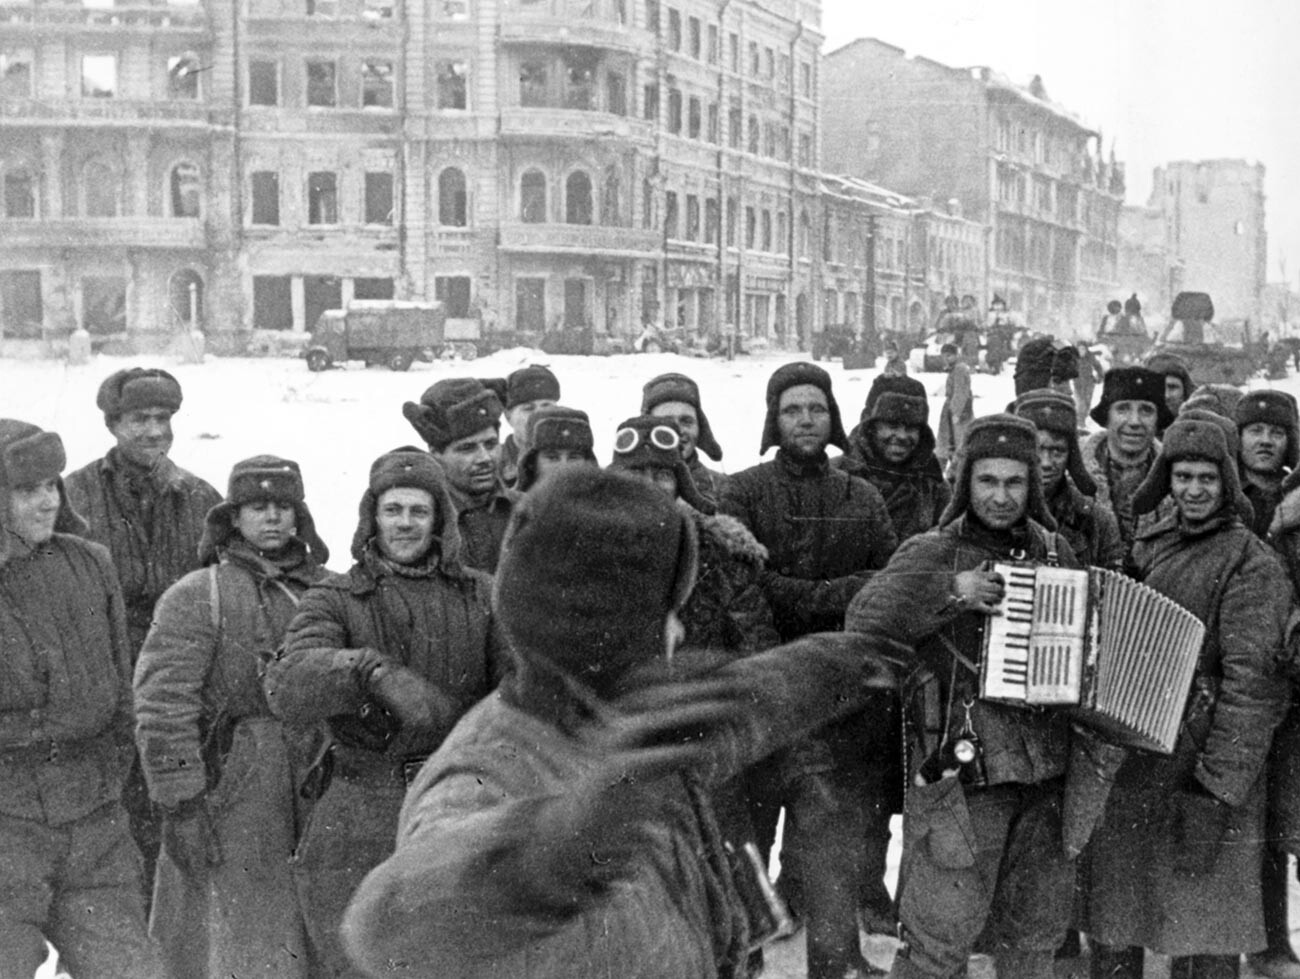 Un po’ di musica per festeggiare nella Stalingrado liberata, gennaio 1943